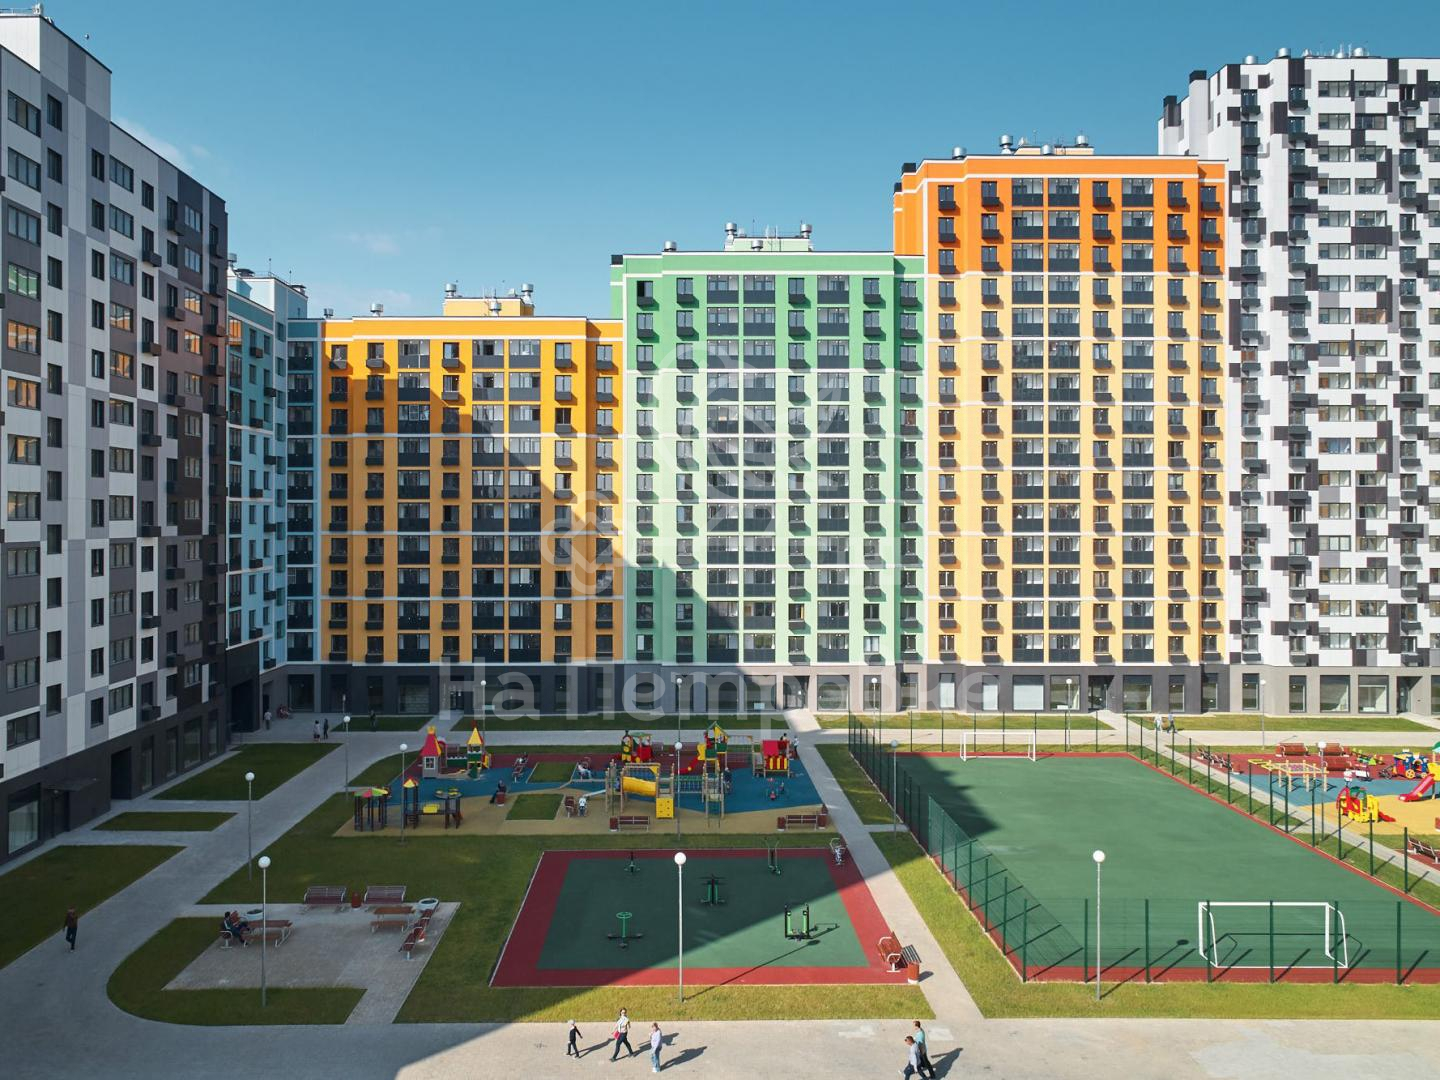 Продам квартиру в Москве по адресу Производственная улица, 17Ас1, площадь 738 квм Недвижимость Москва (Россия)  Высота зданий варьируется от 7 до 23 этажей, при этом они расположены на комфортном расстоянии друг от друга